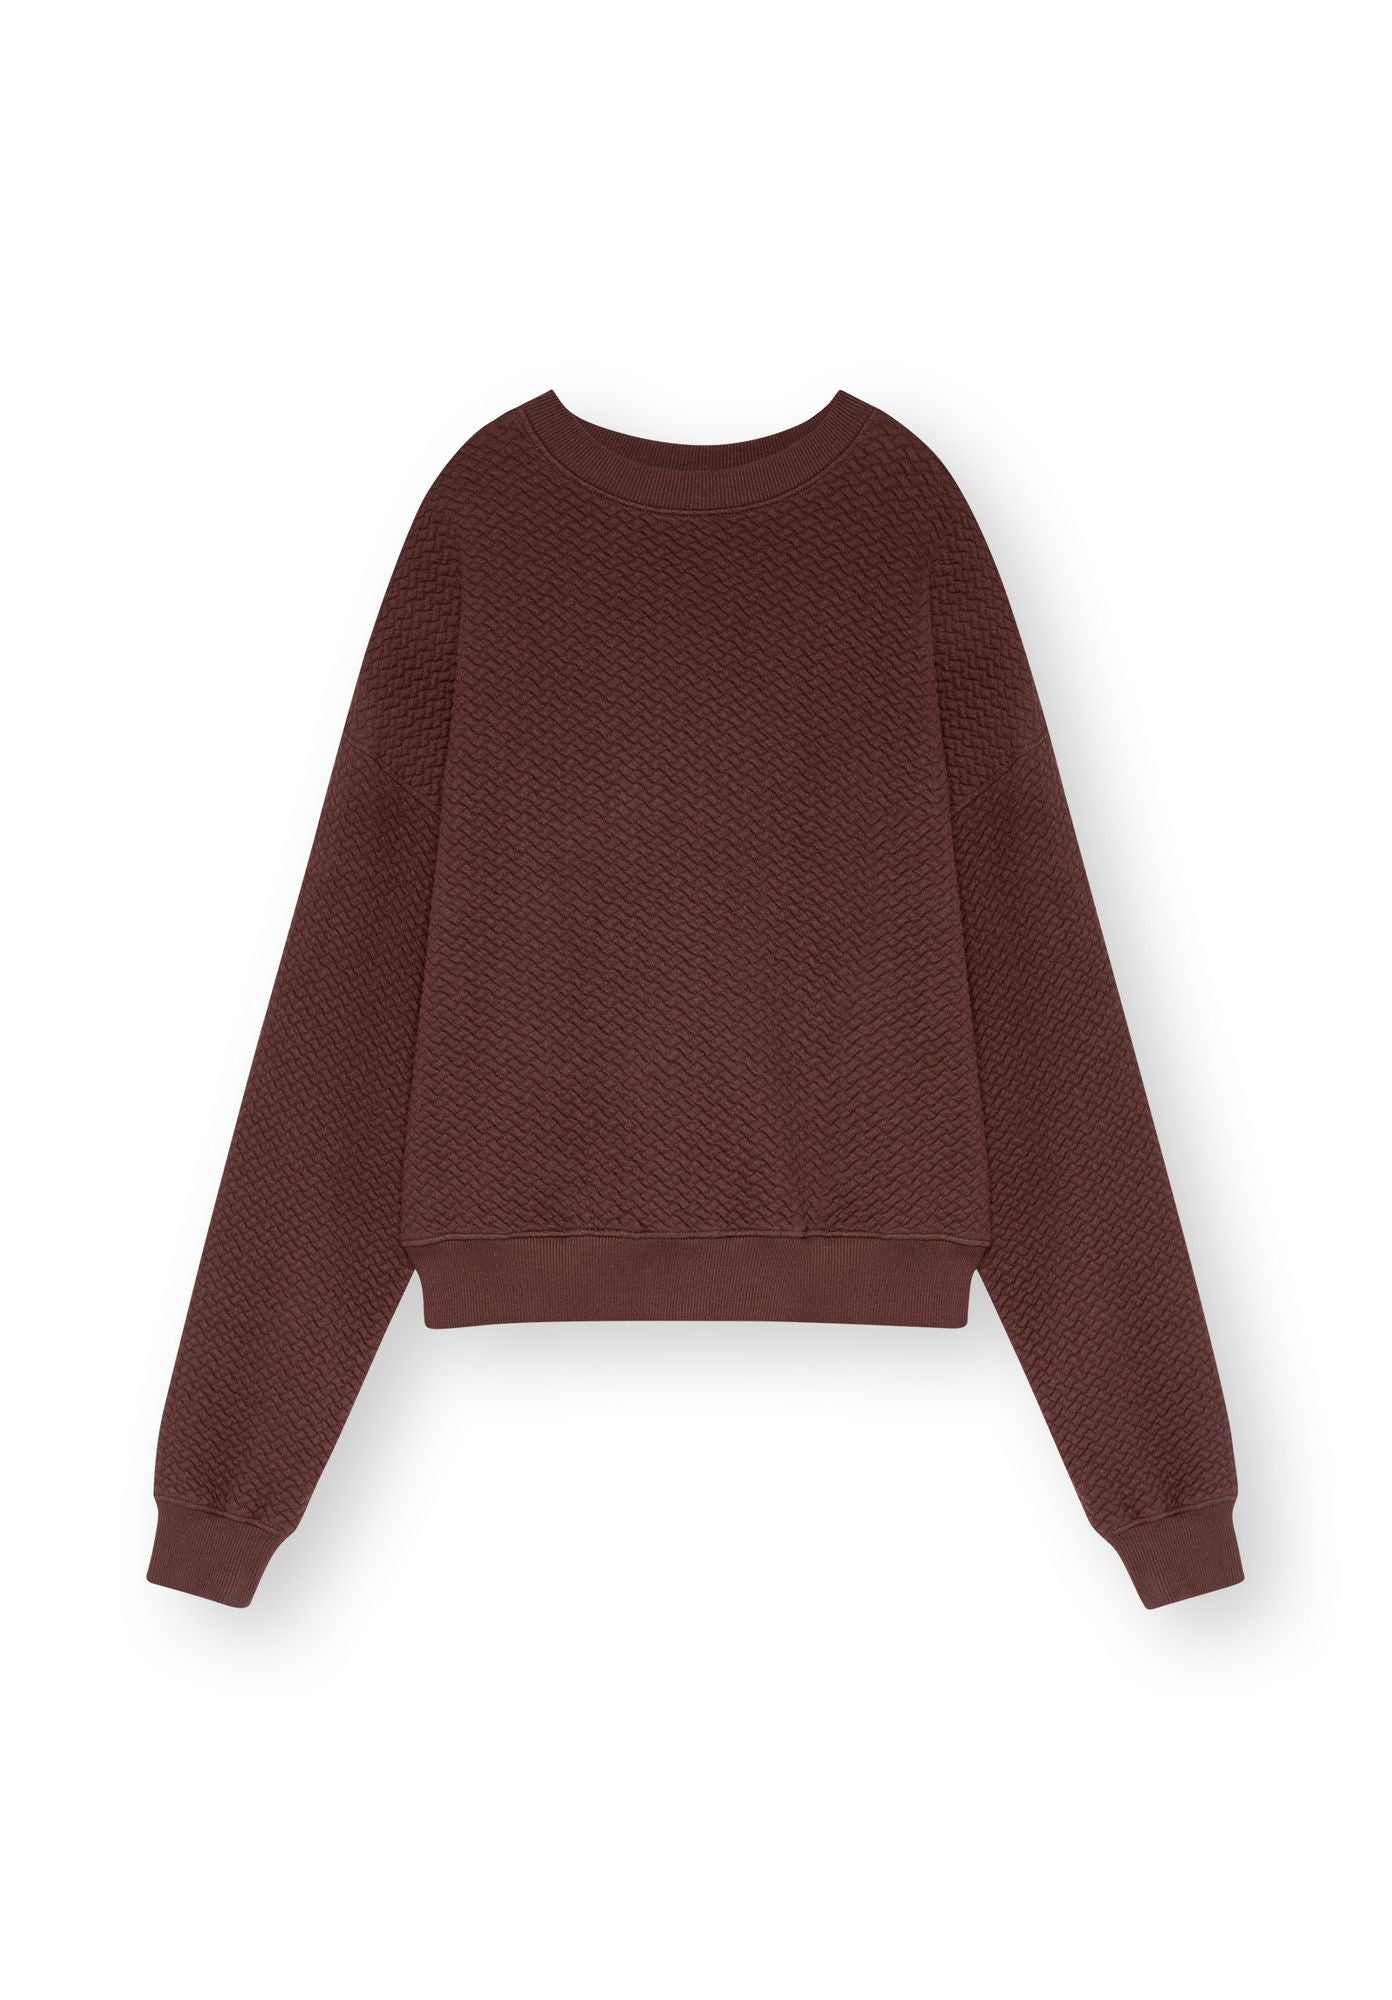 TT1022 Sweater STRUCTURED